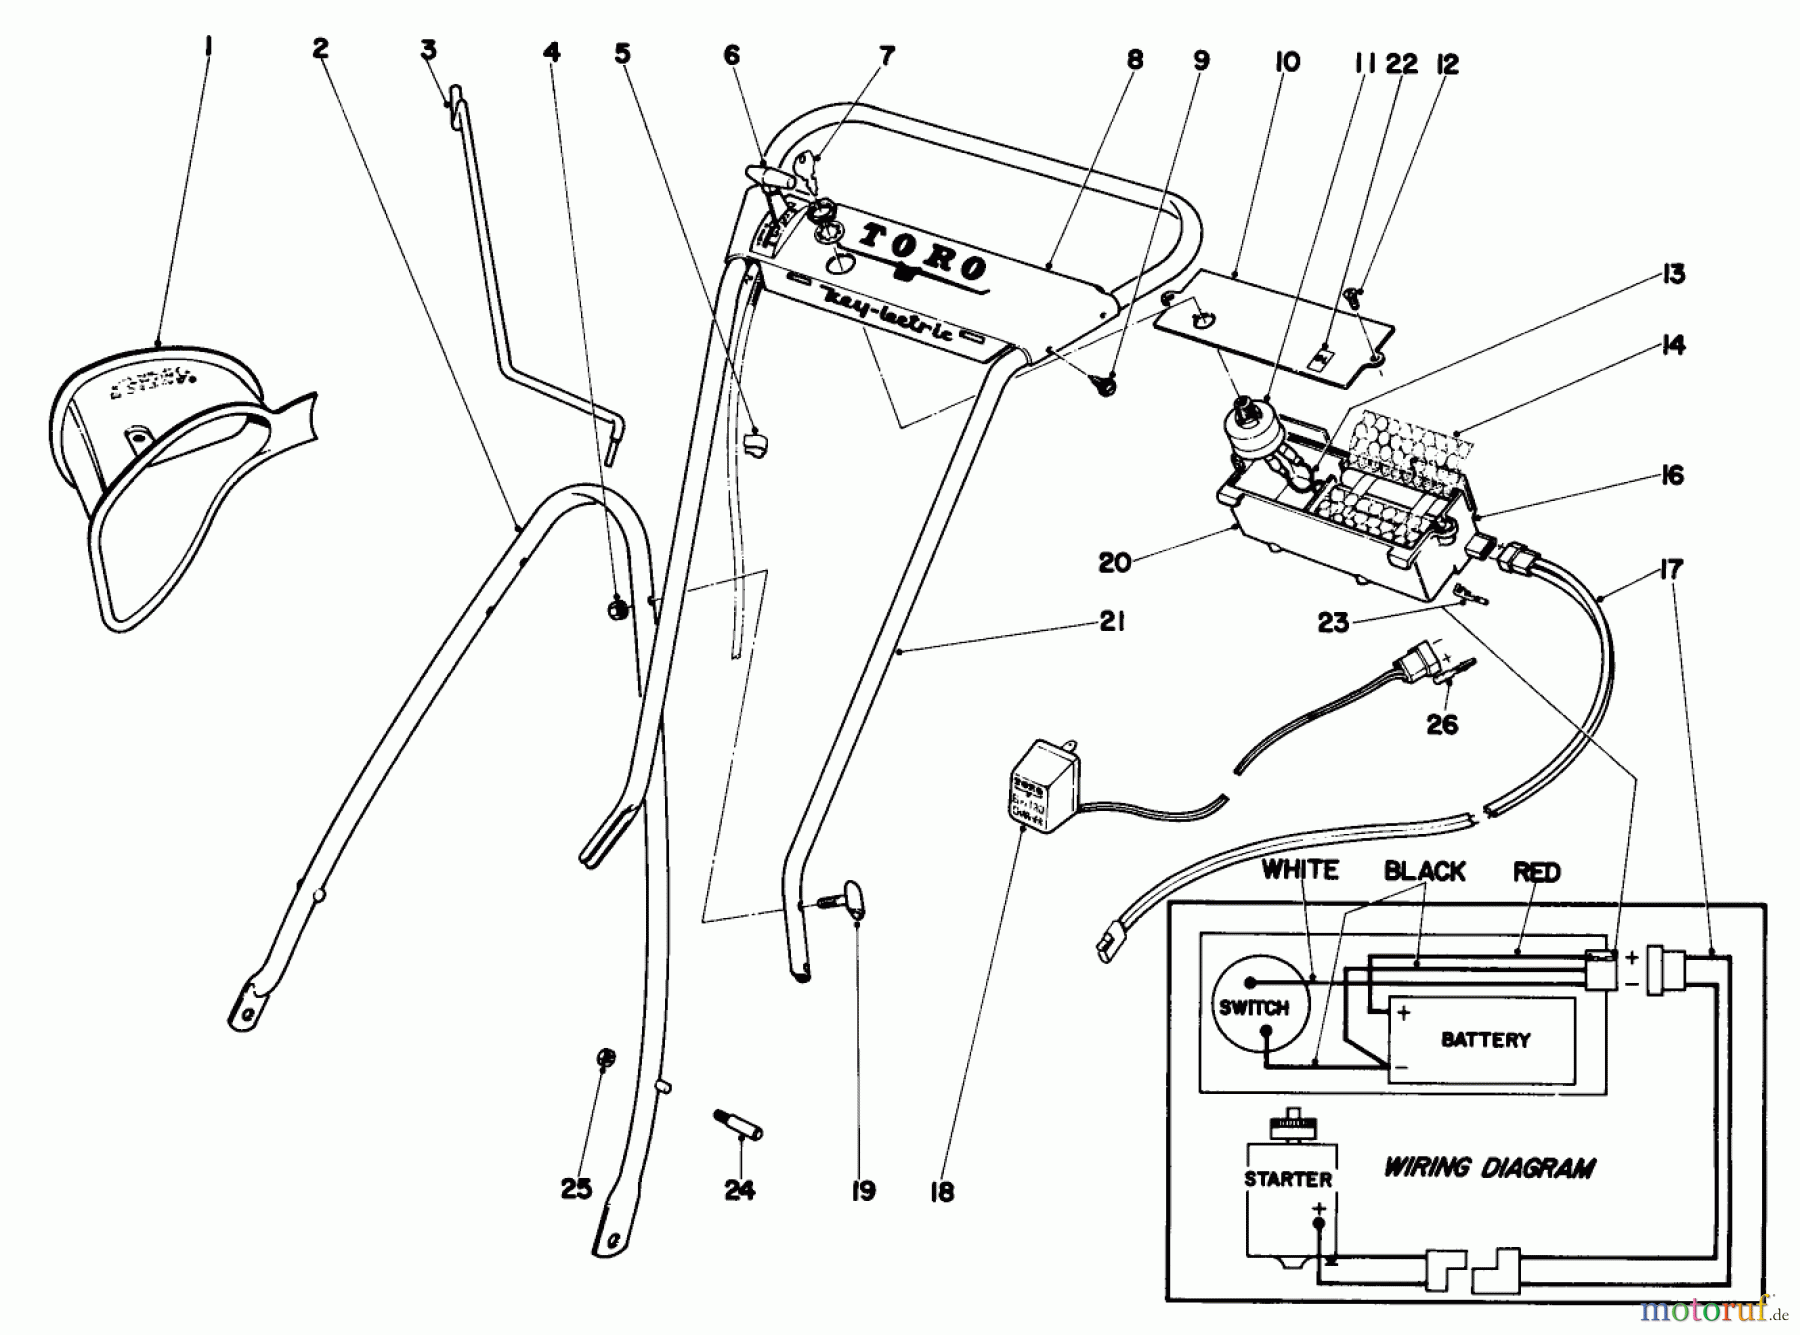  Toro Neu Mowers, Walk-Behind Seite 1 18216 - Toro Whirlwind Lawnmower, 1970 (0000001-0999999) HANDLE ASSEMBLY